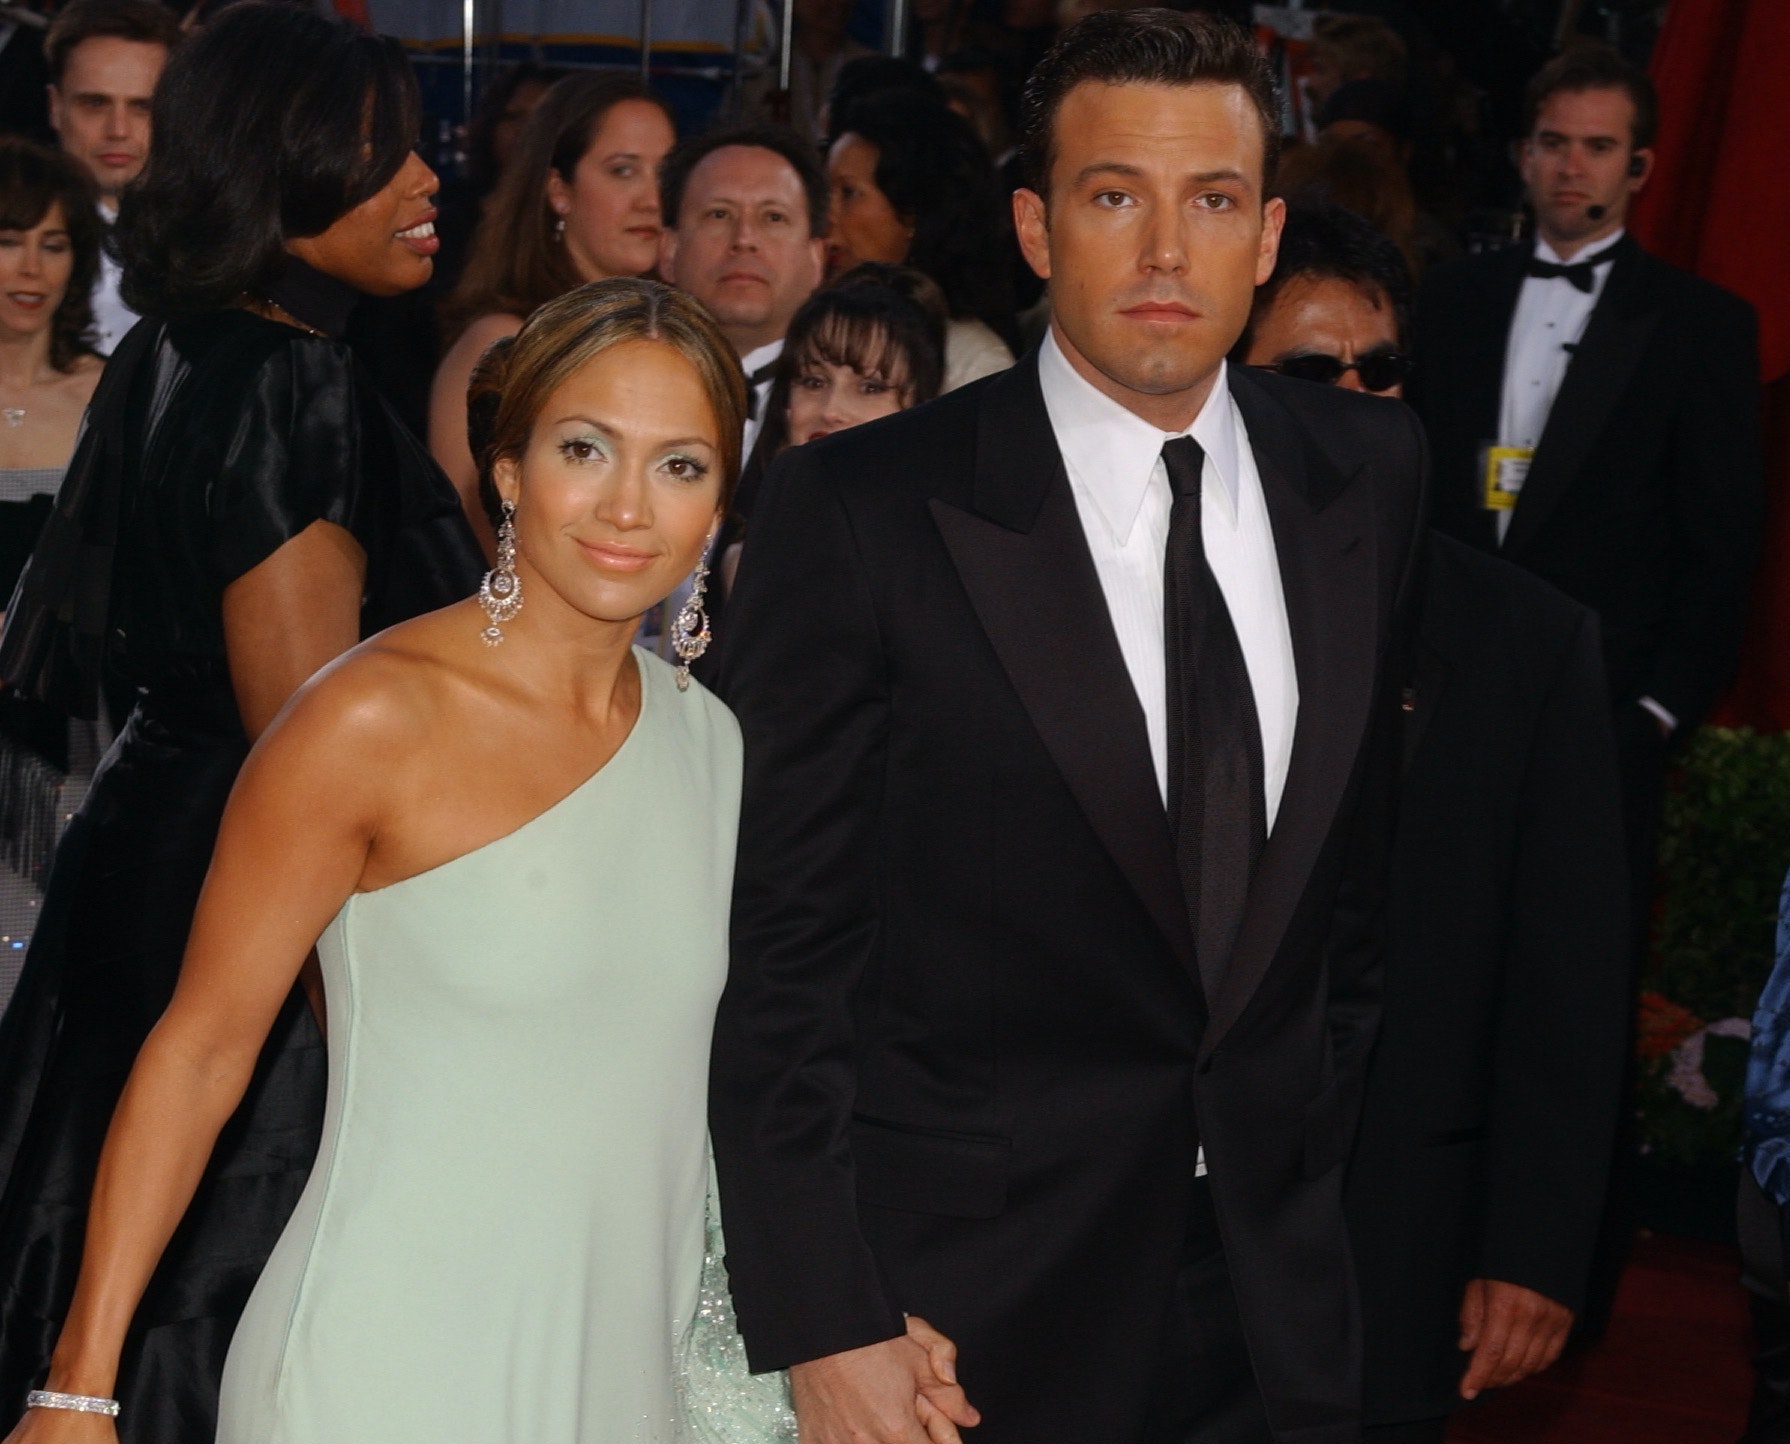 Ben Affleck prisjeća se 'ružnih, zlobnih' stvari koje su rekli o J.Lo tijekom njihove veze